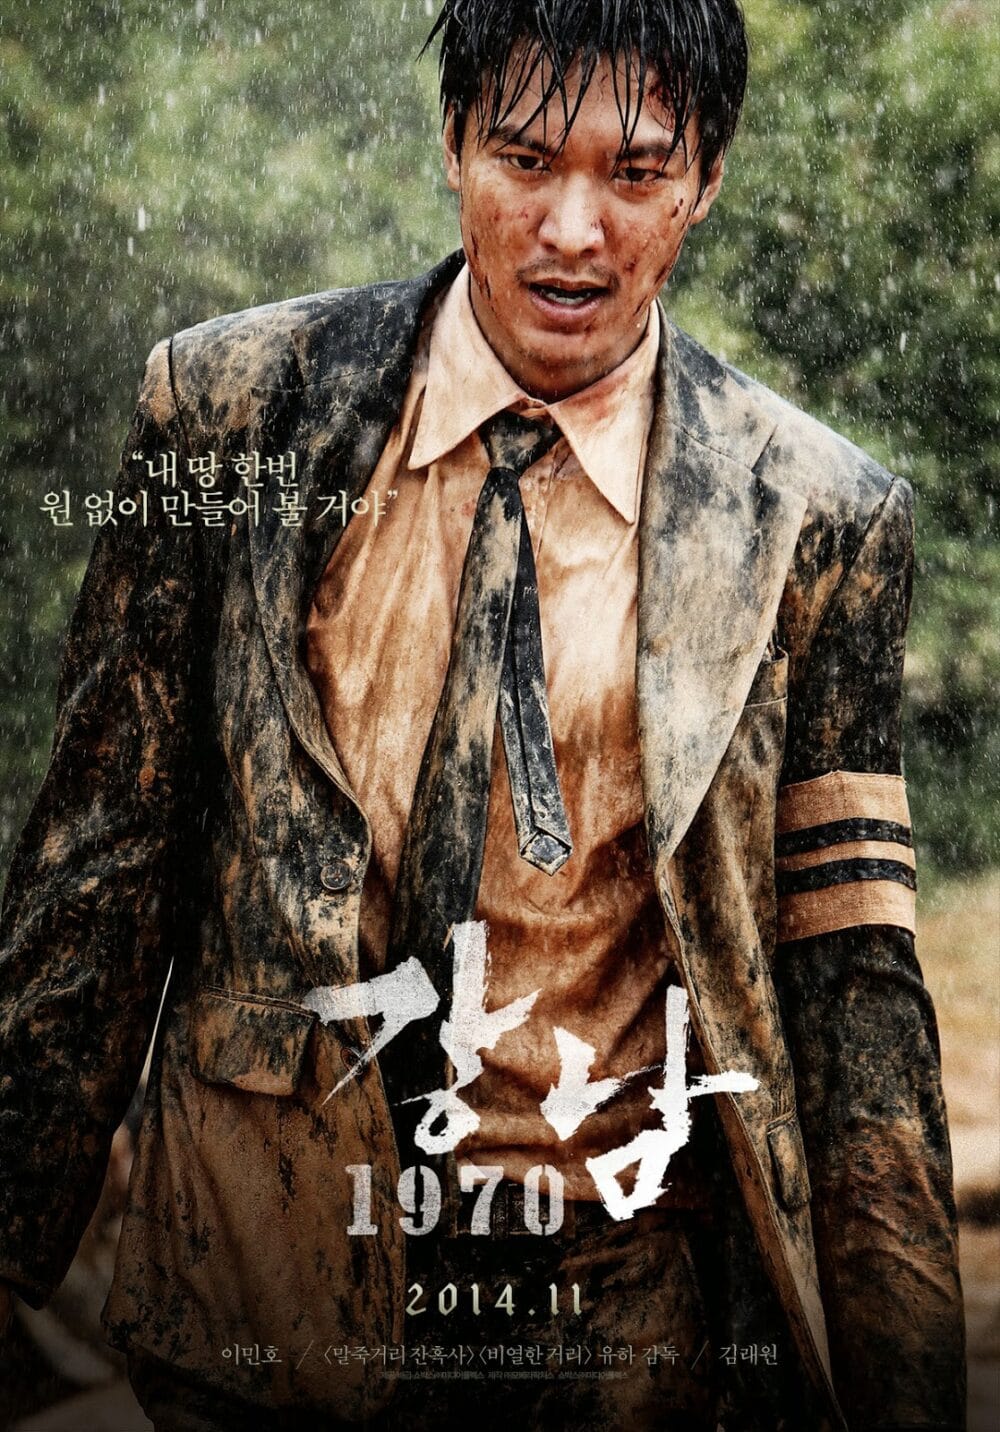 poster cua bo phim dien anh bui doi gang nam e1581775030129 - Lee Min Ho và con đường sự nghiệp của chàng hoàng tử xứ sở Kim chi